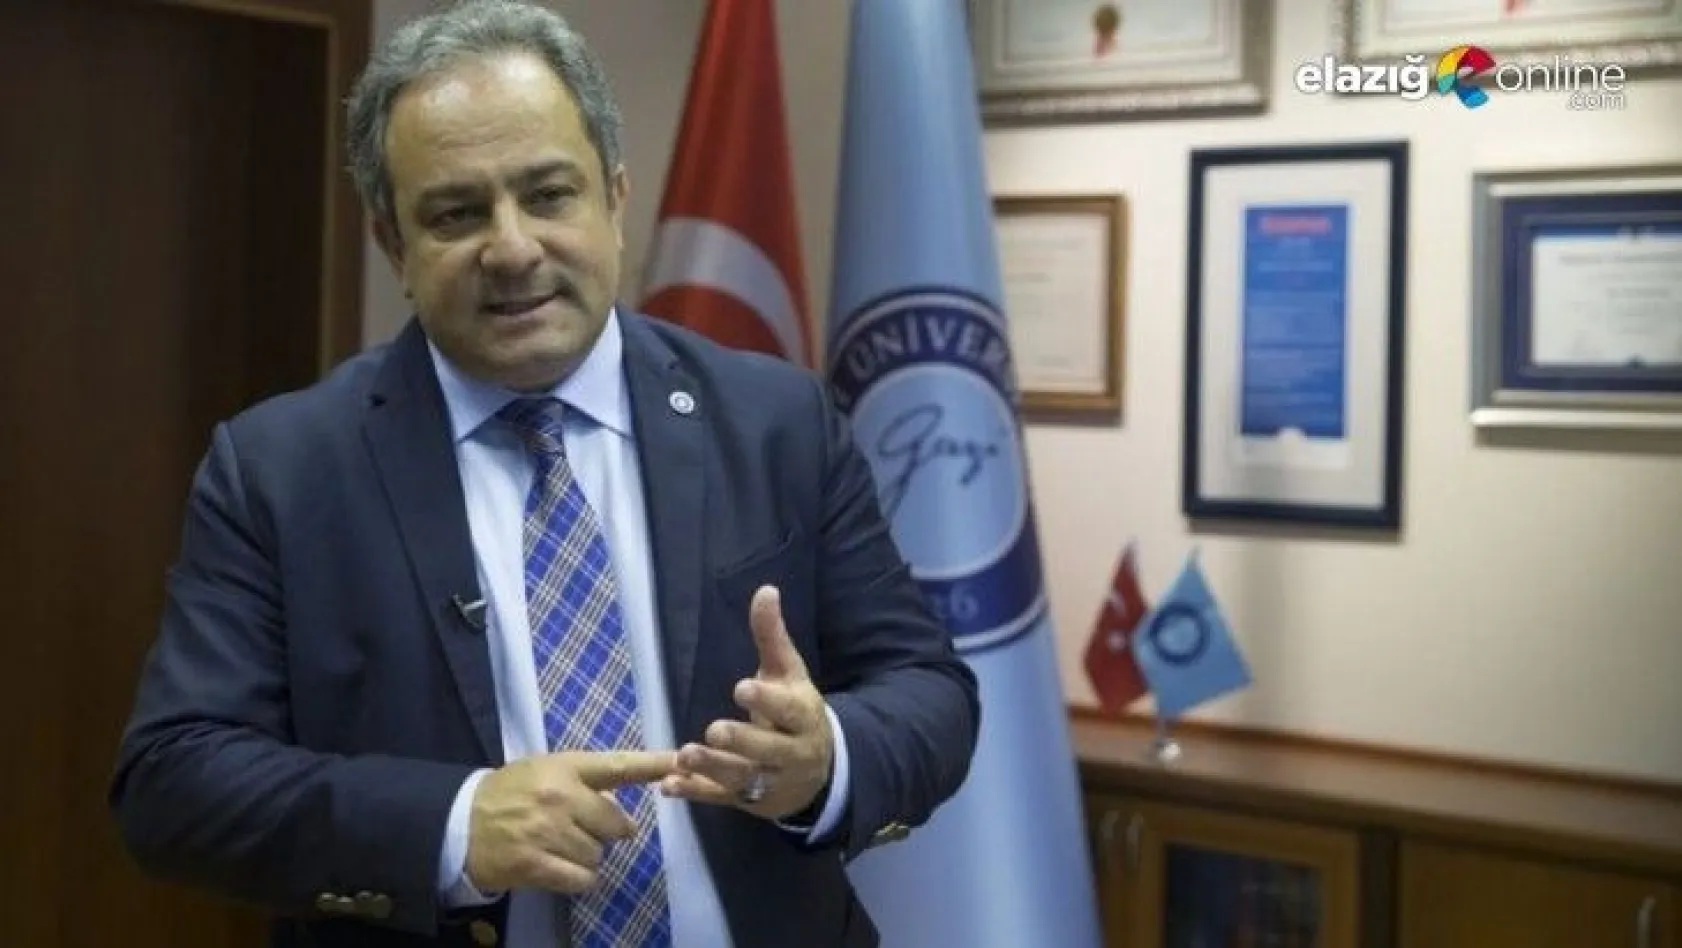 Elazığlı hemşehrimiz Prof. Dr. Mustafa Necmi İlhan'dan 'mutasyon' uyarısı